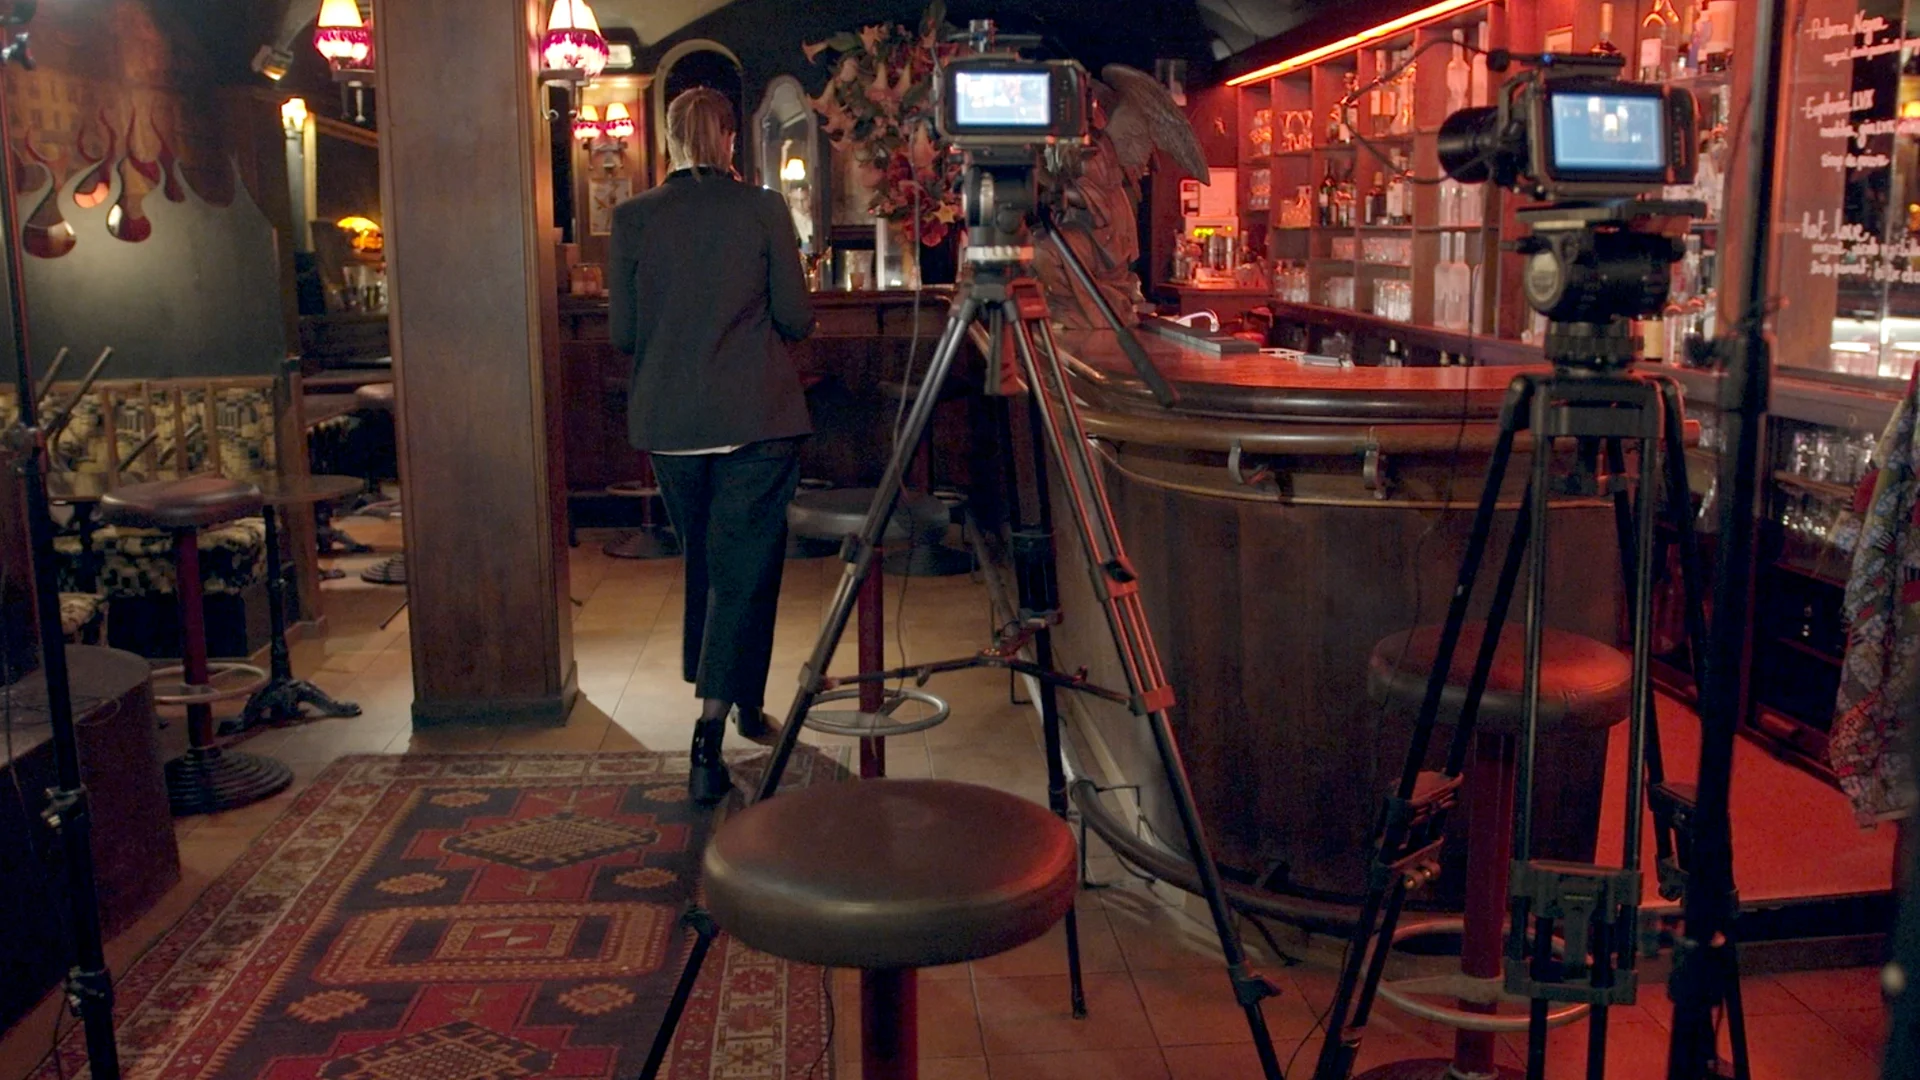 Cornland Studio - backstage d'un set d'interview video dans un bar chalereux